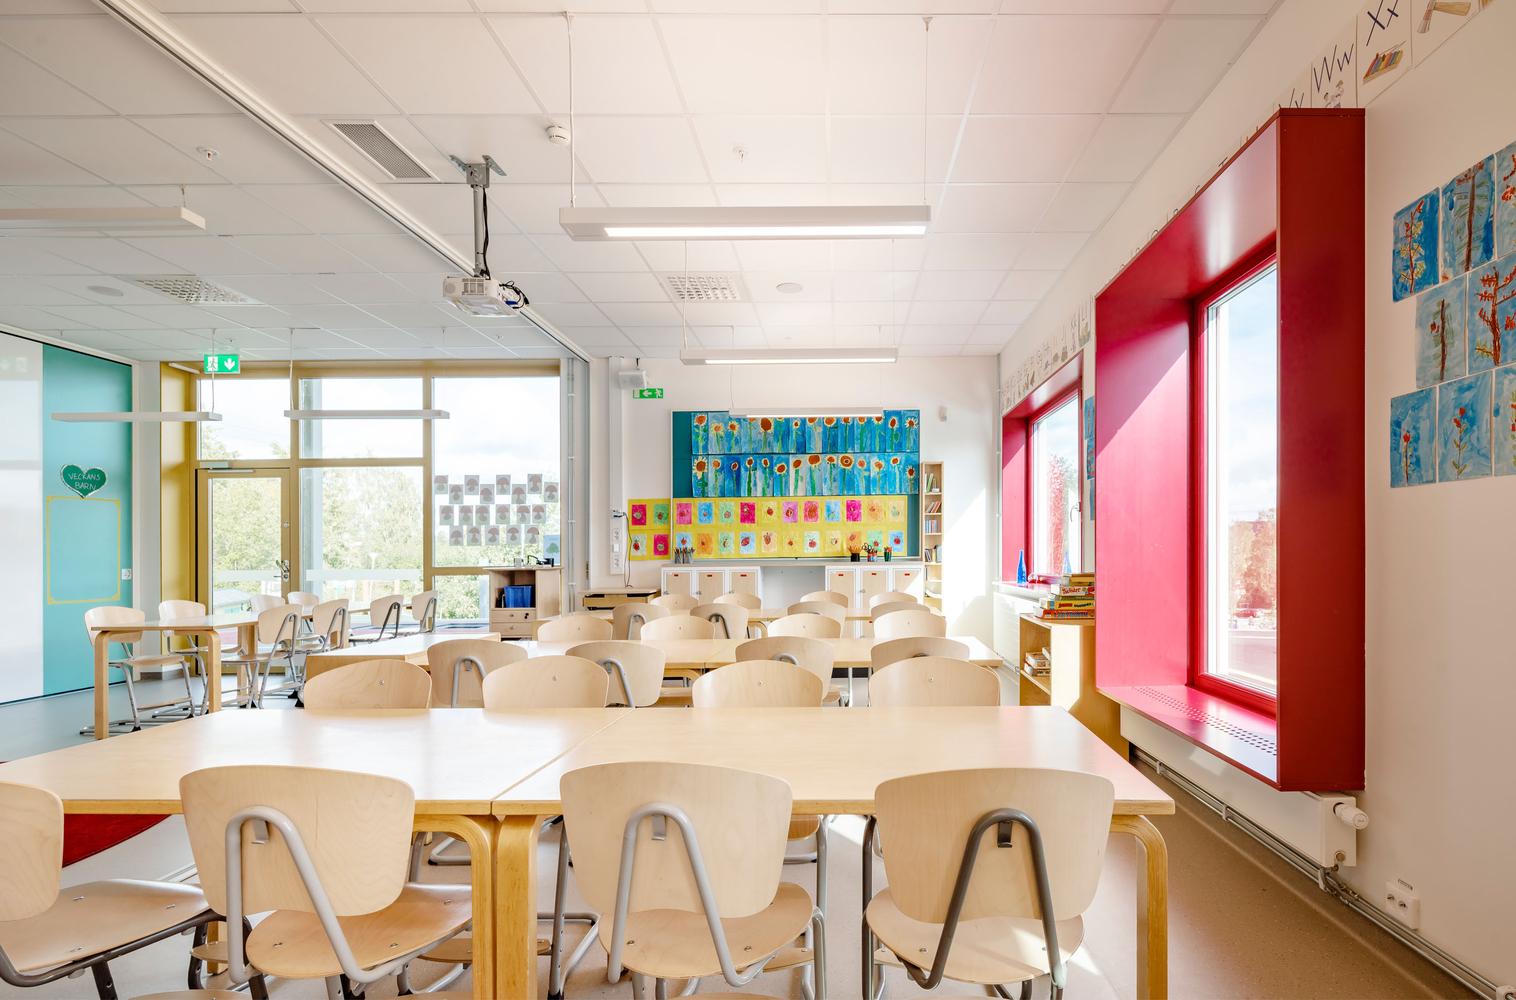 【貫徹瑞典精緻設計的校園】以色彩和細節激發兒童學習